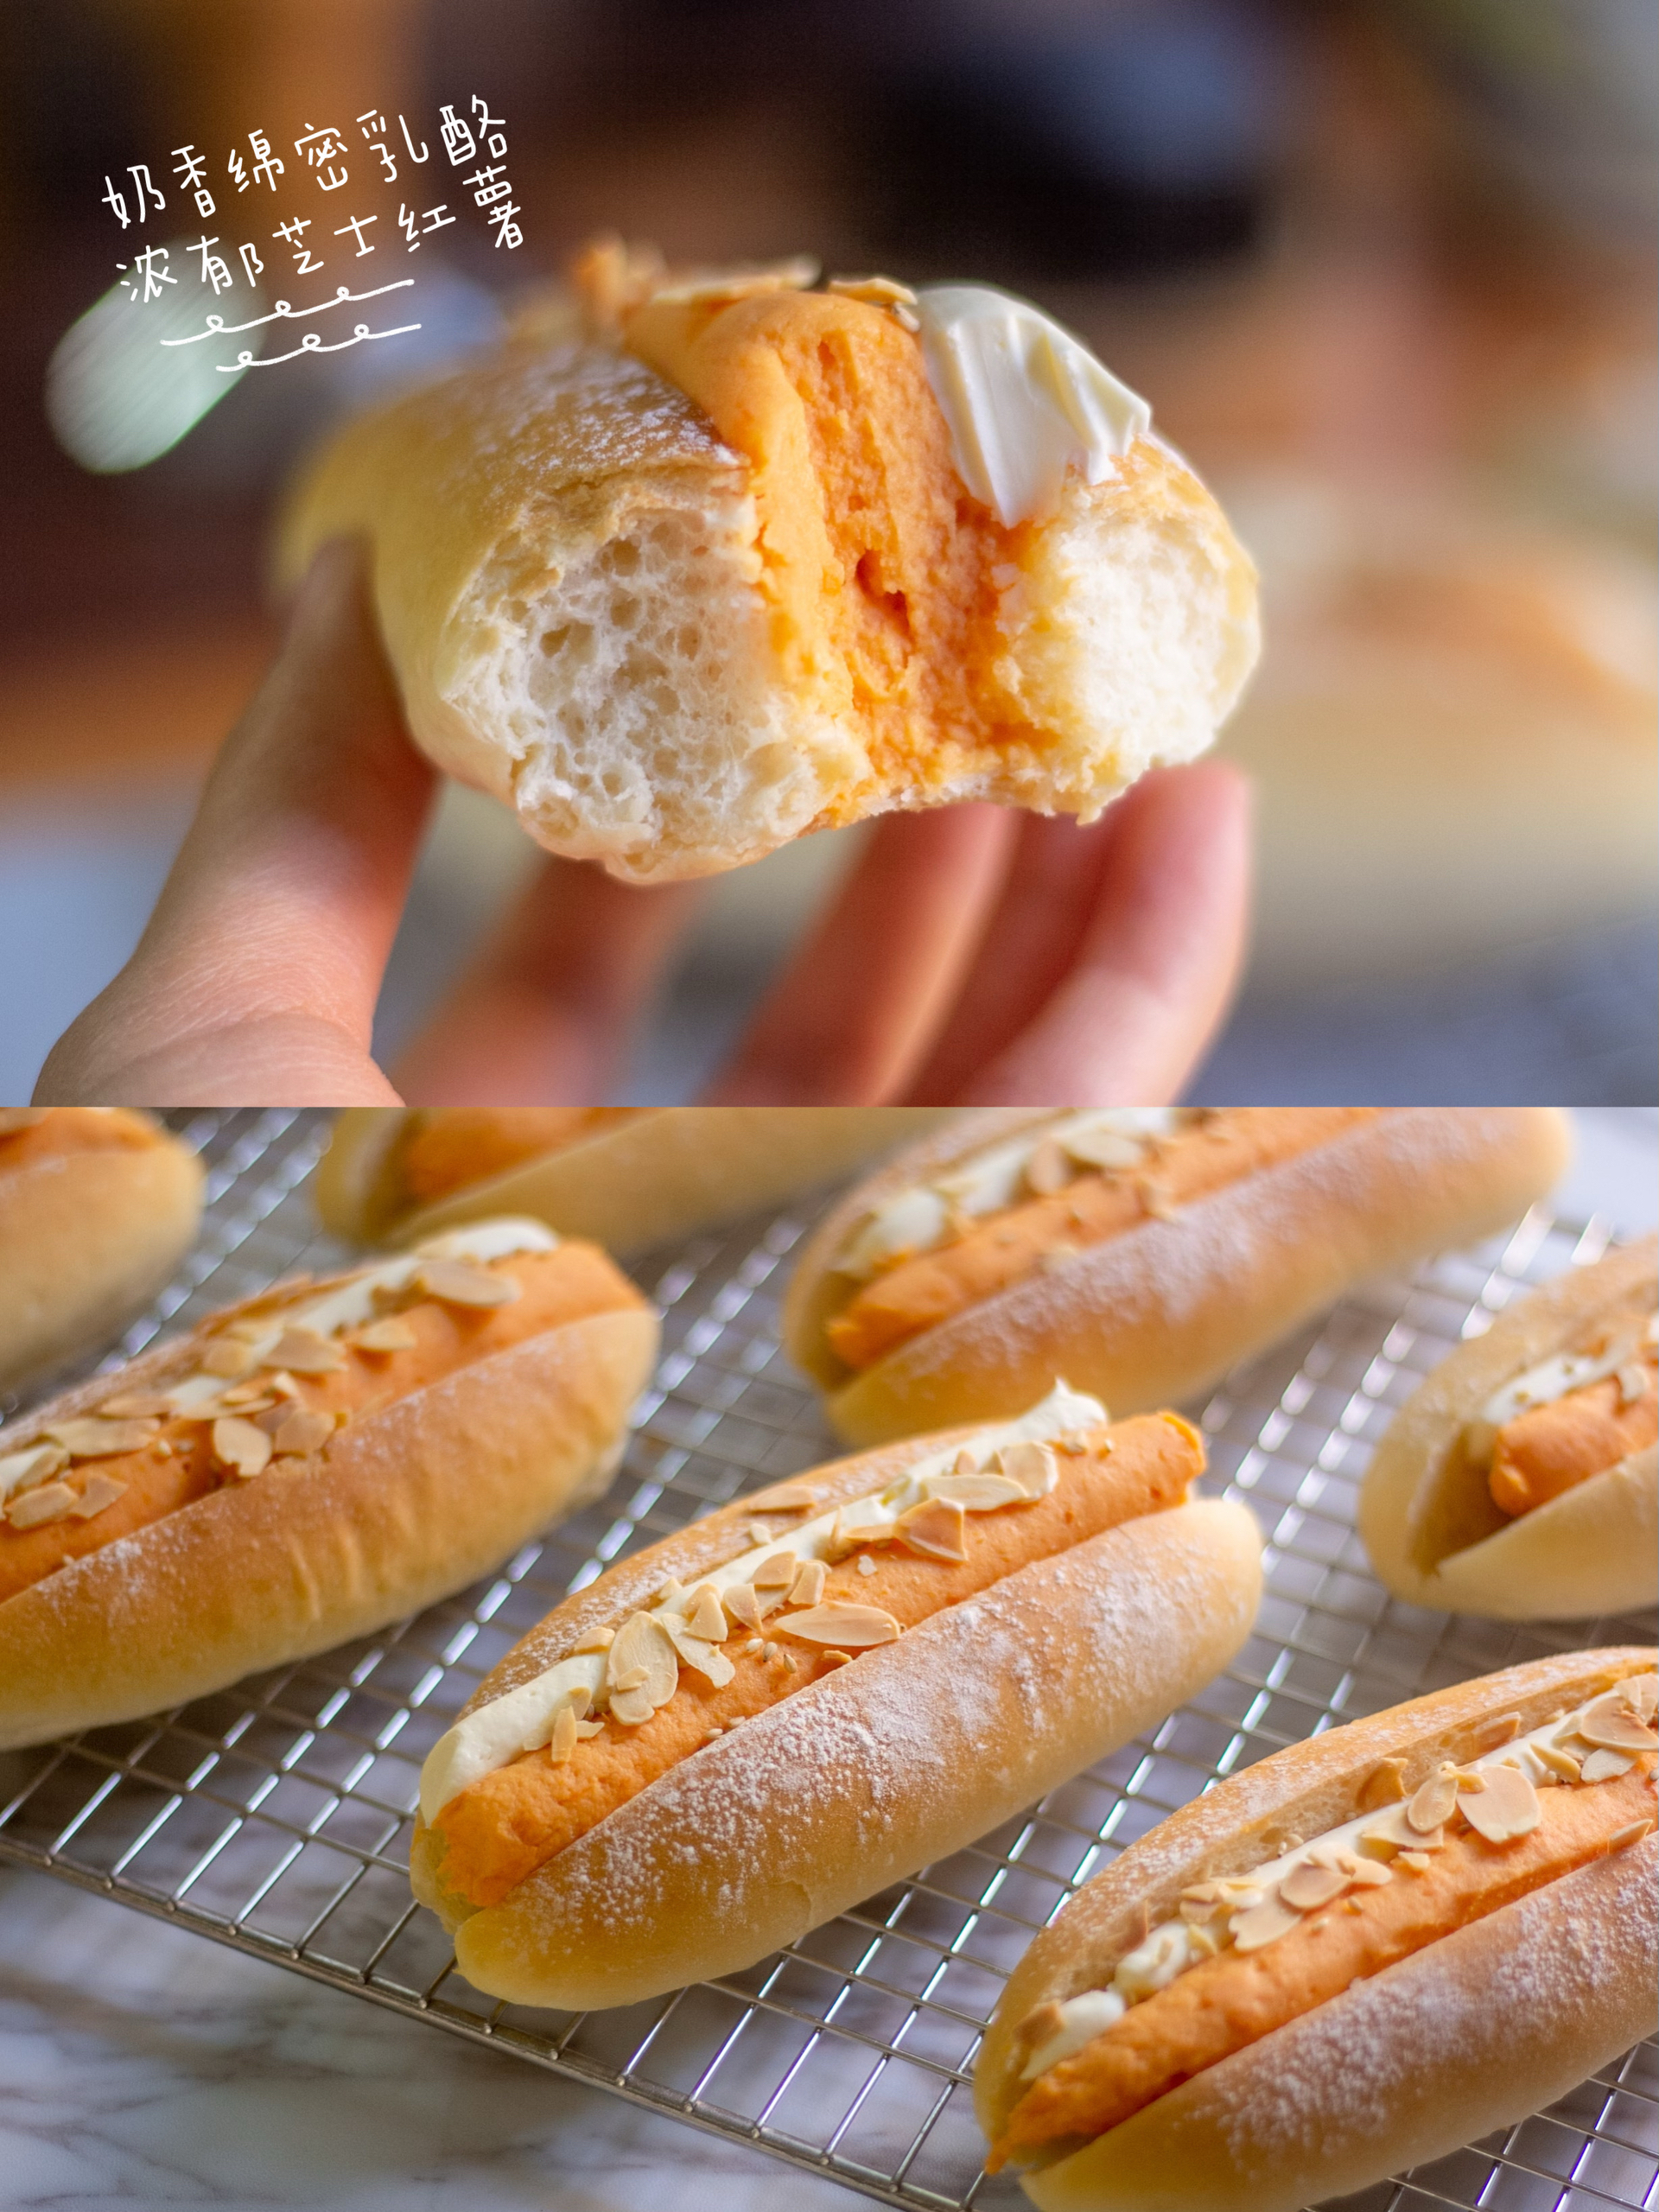 芝士烤红薯奶酪面包🍠香甜软糯❄️冬日绝配的做法